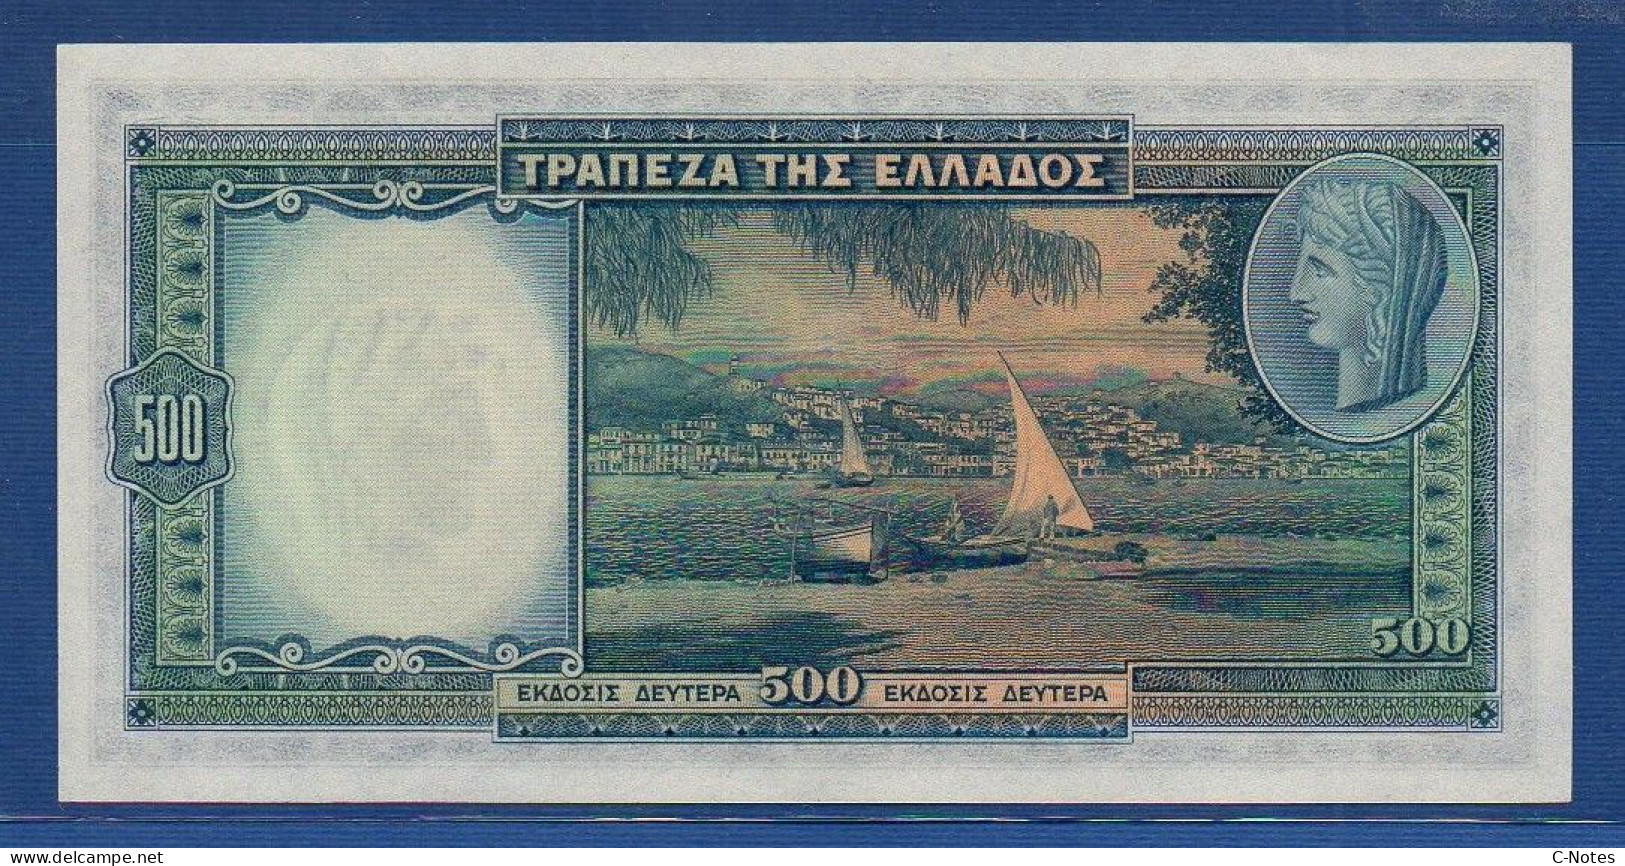 GREECE - P.109a – 500 Drachmai 01.01.1939  UNC-, Serie Δ-007 694,422 - Grèce